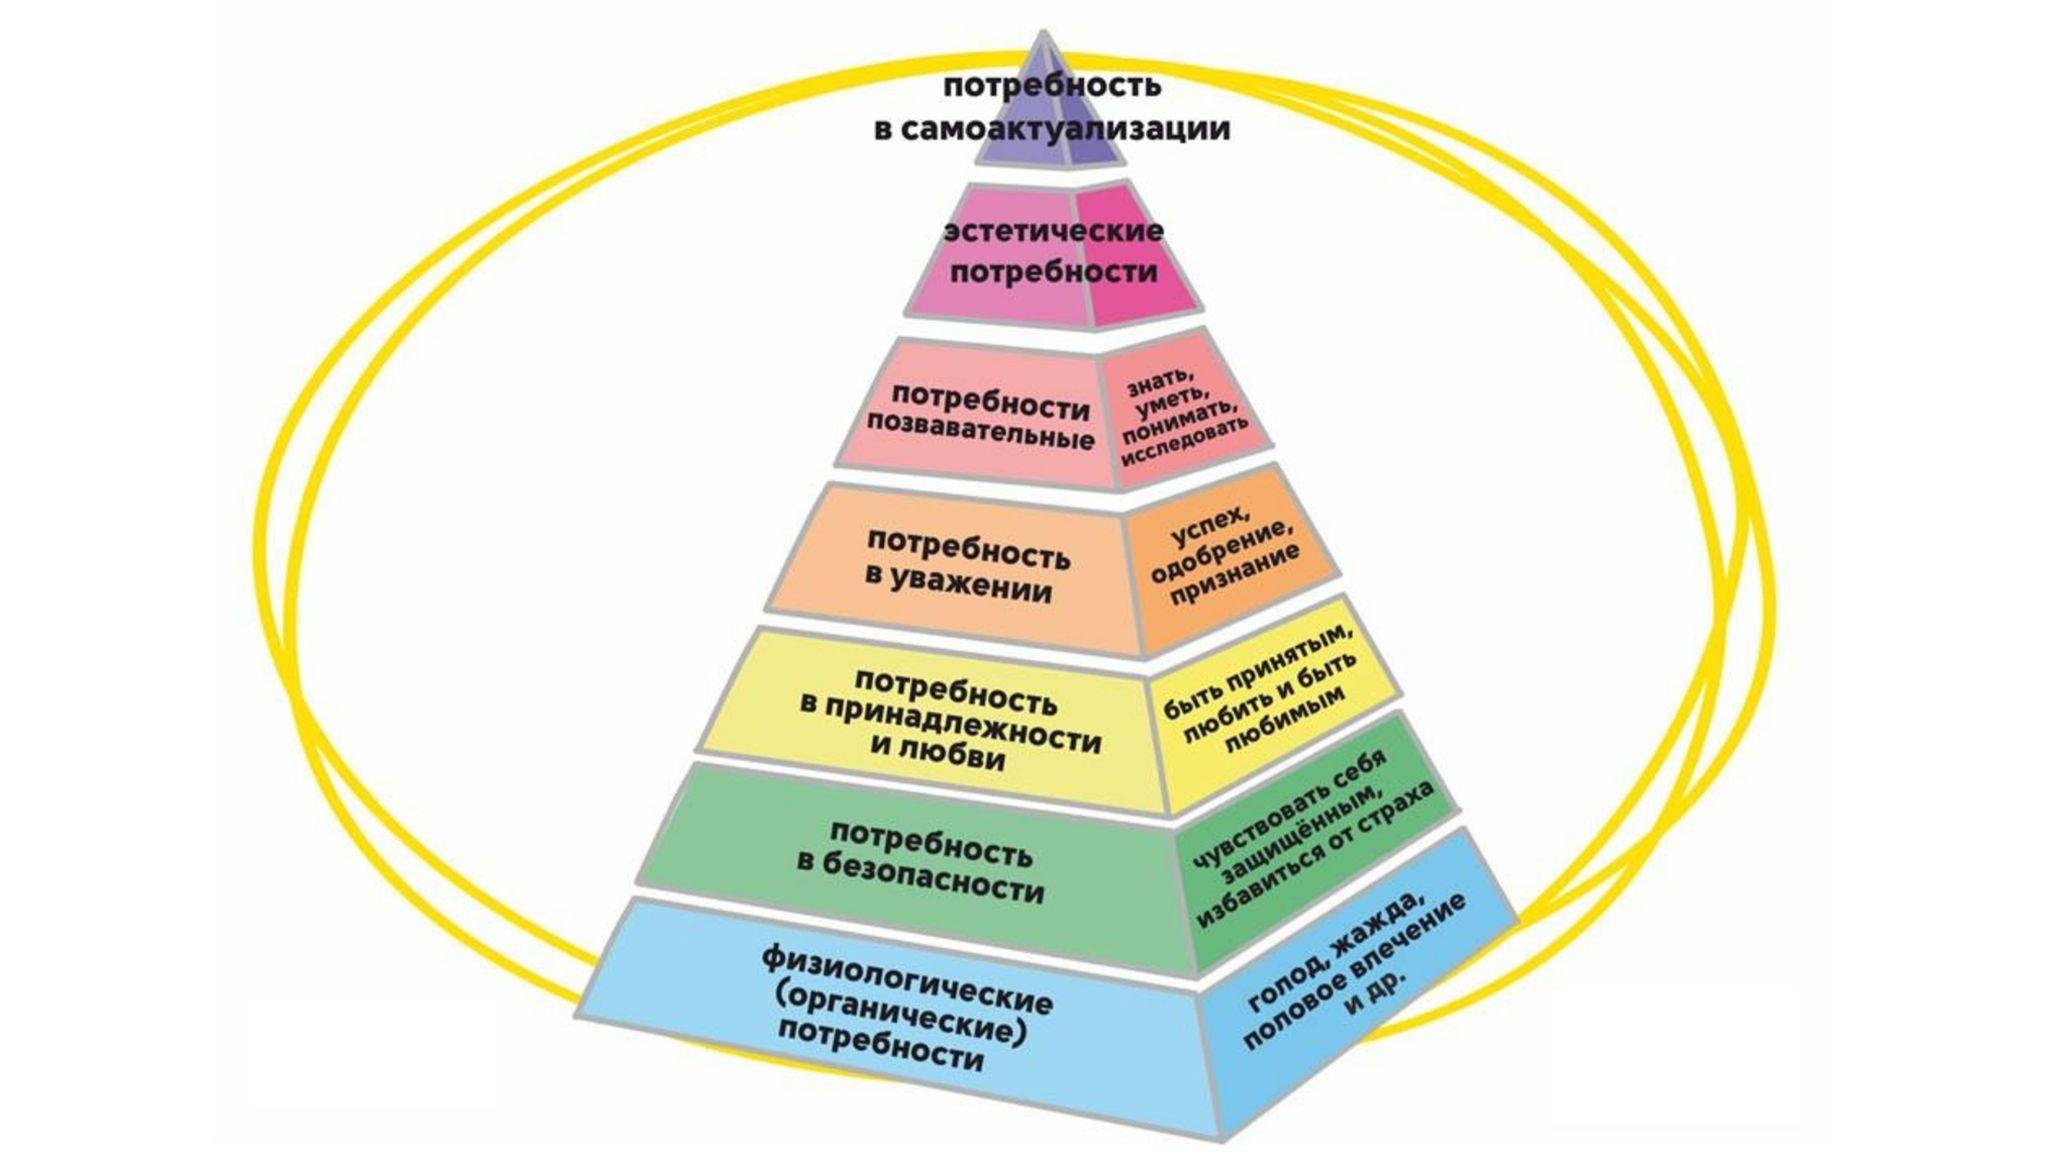 Обоснуйте необходимость ограничений потребностей человека. Семь уровней пирамиды Маслоу. Пирамида развития личности Маслоу. Базовые потребности человека по пирамиде Маслоу. Пирамида Маслоу 7 уровней безопасности.